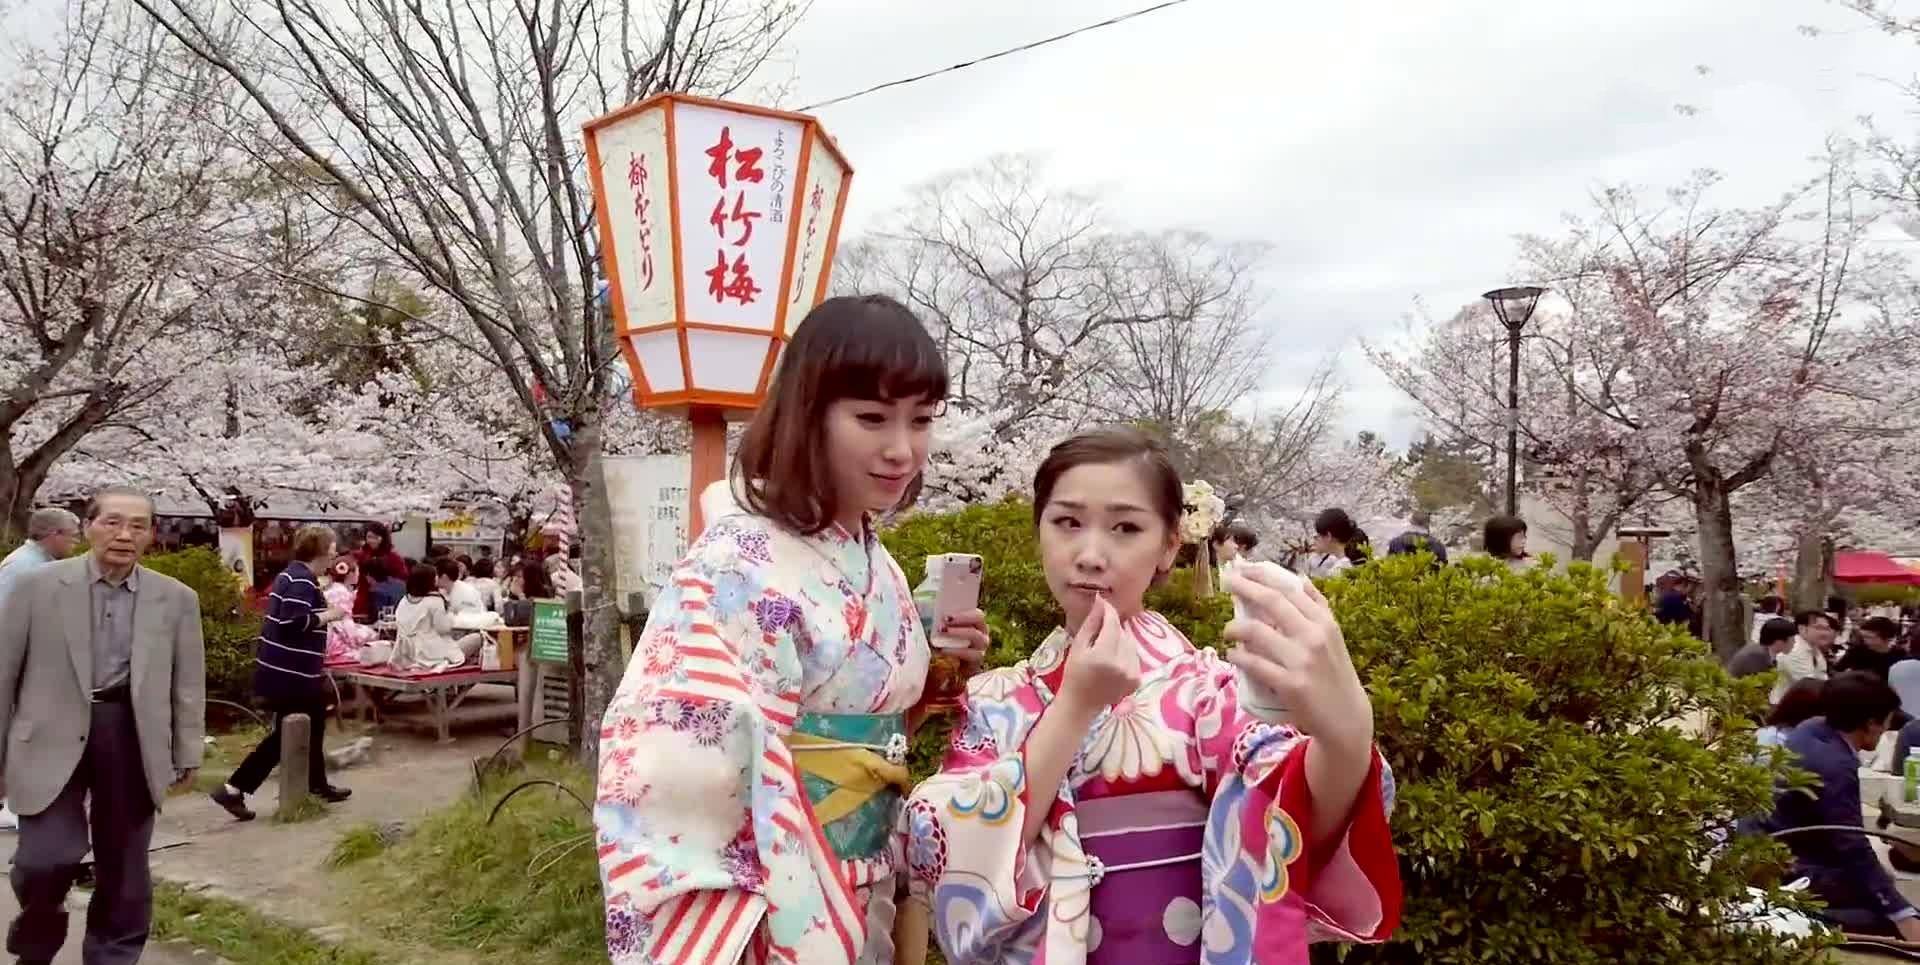 赛博体育官方网站-
俄罗斯游客喜欢到日本旅游 日本女人穿和服友好看待(图4)